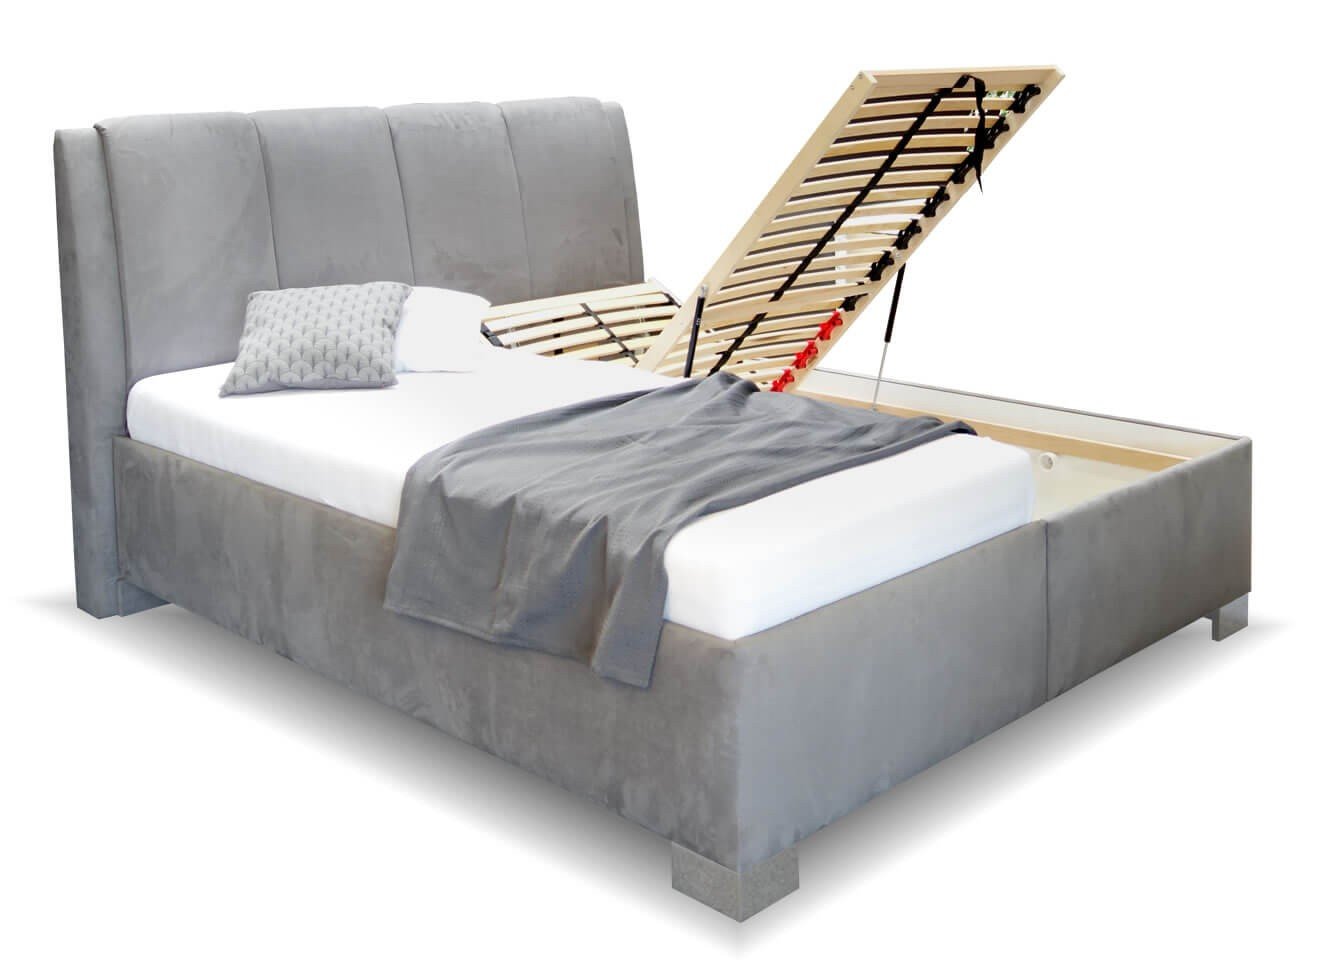 Vysoká čalouněná postel s úložným prostorem GUVERNÉR, 180x210